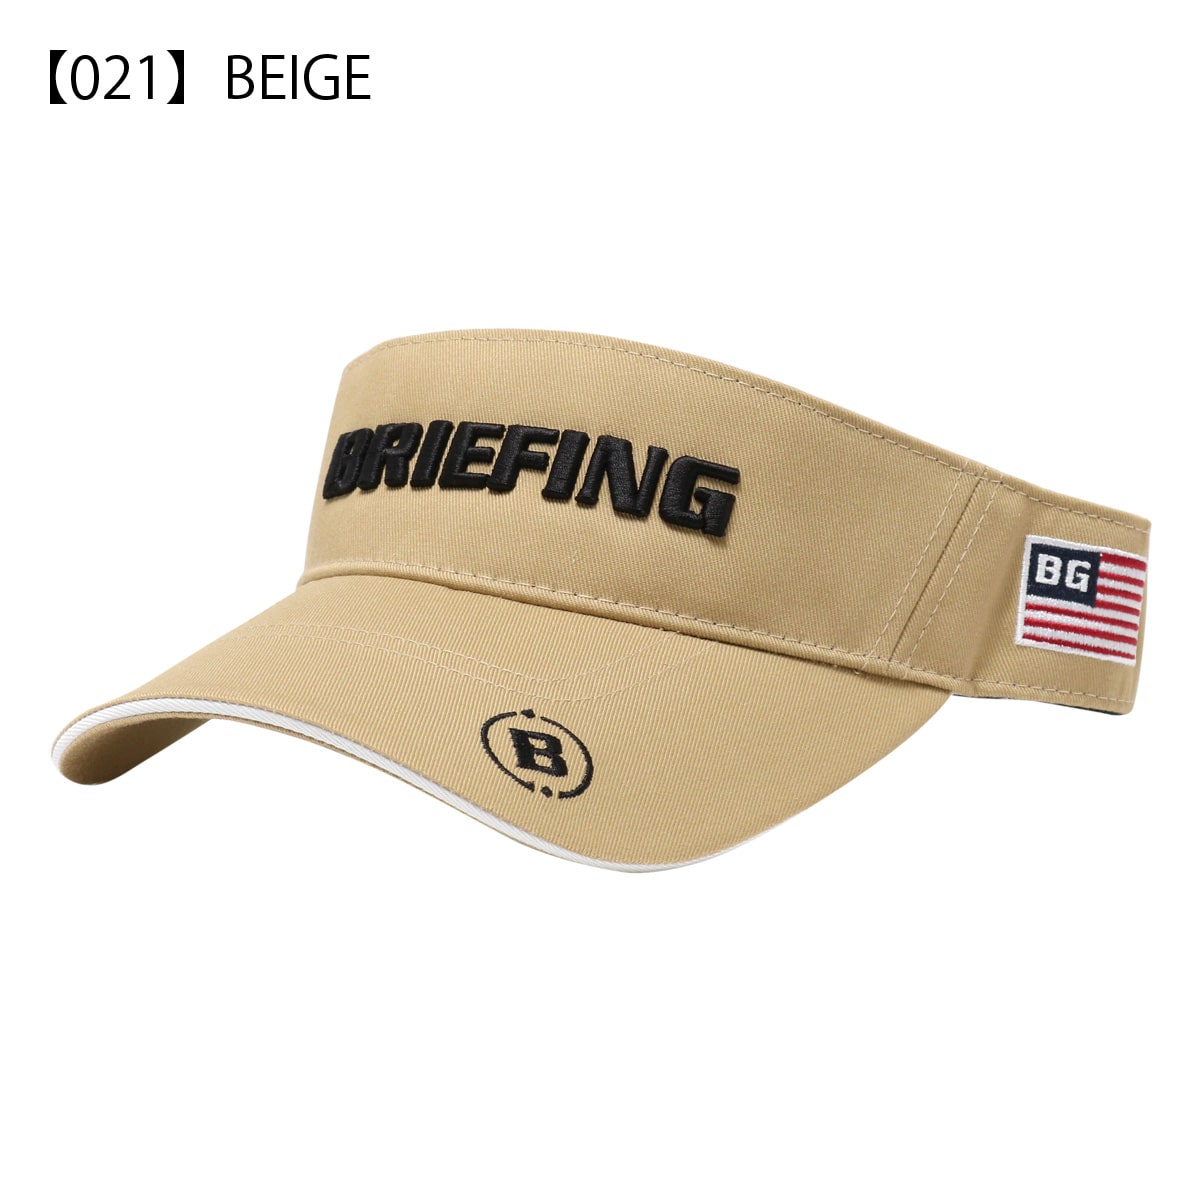 ブリーフィング ゴルフ サンバイザー 帽子 メンズ レディース BRG231M68 URBAN COLLECTION BRIEFING